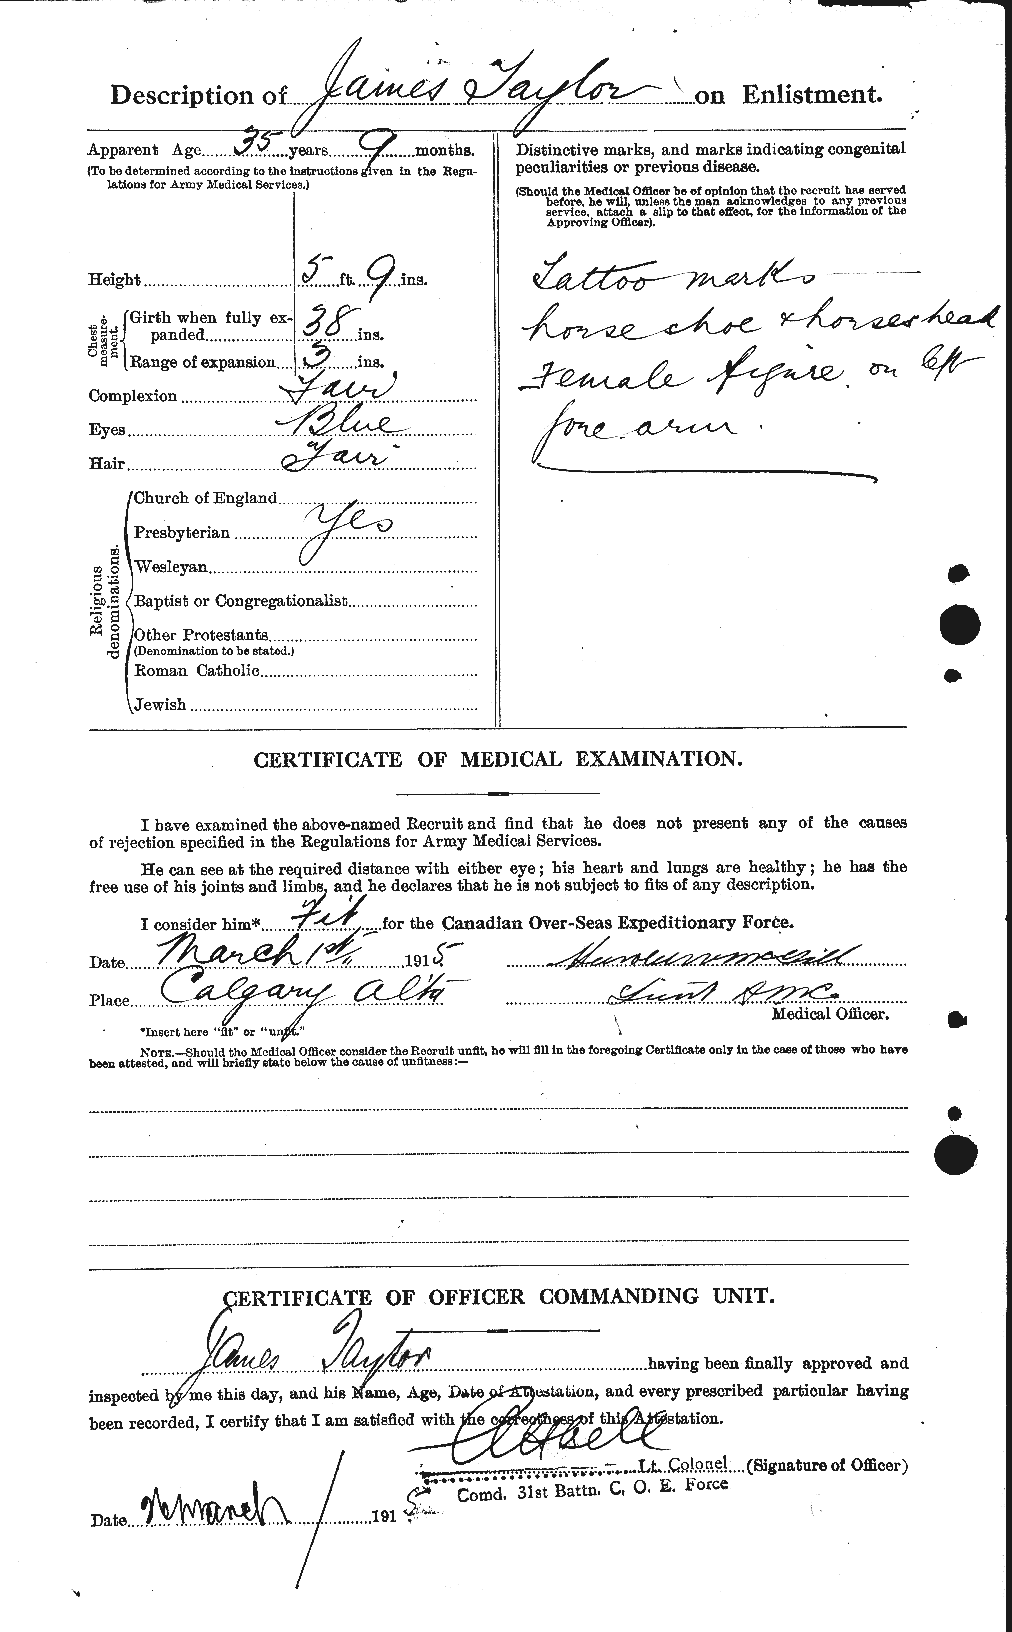 Dossiers du Personnel de la Première Guerre mondiale - CEC 626682b